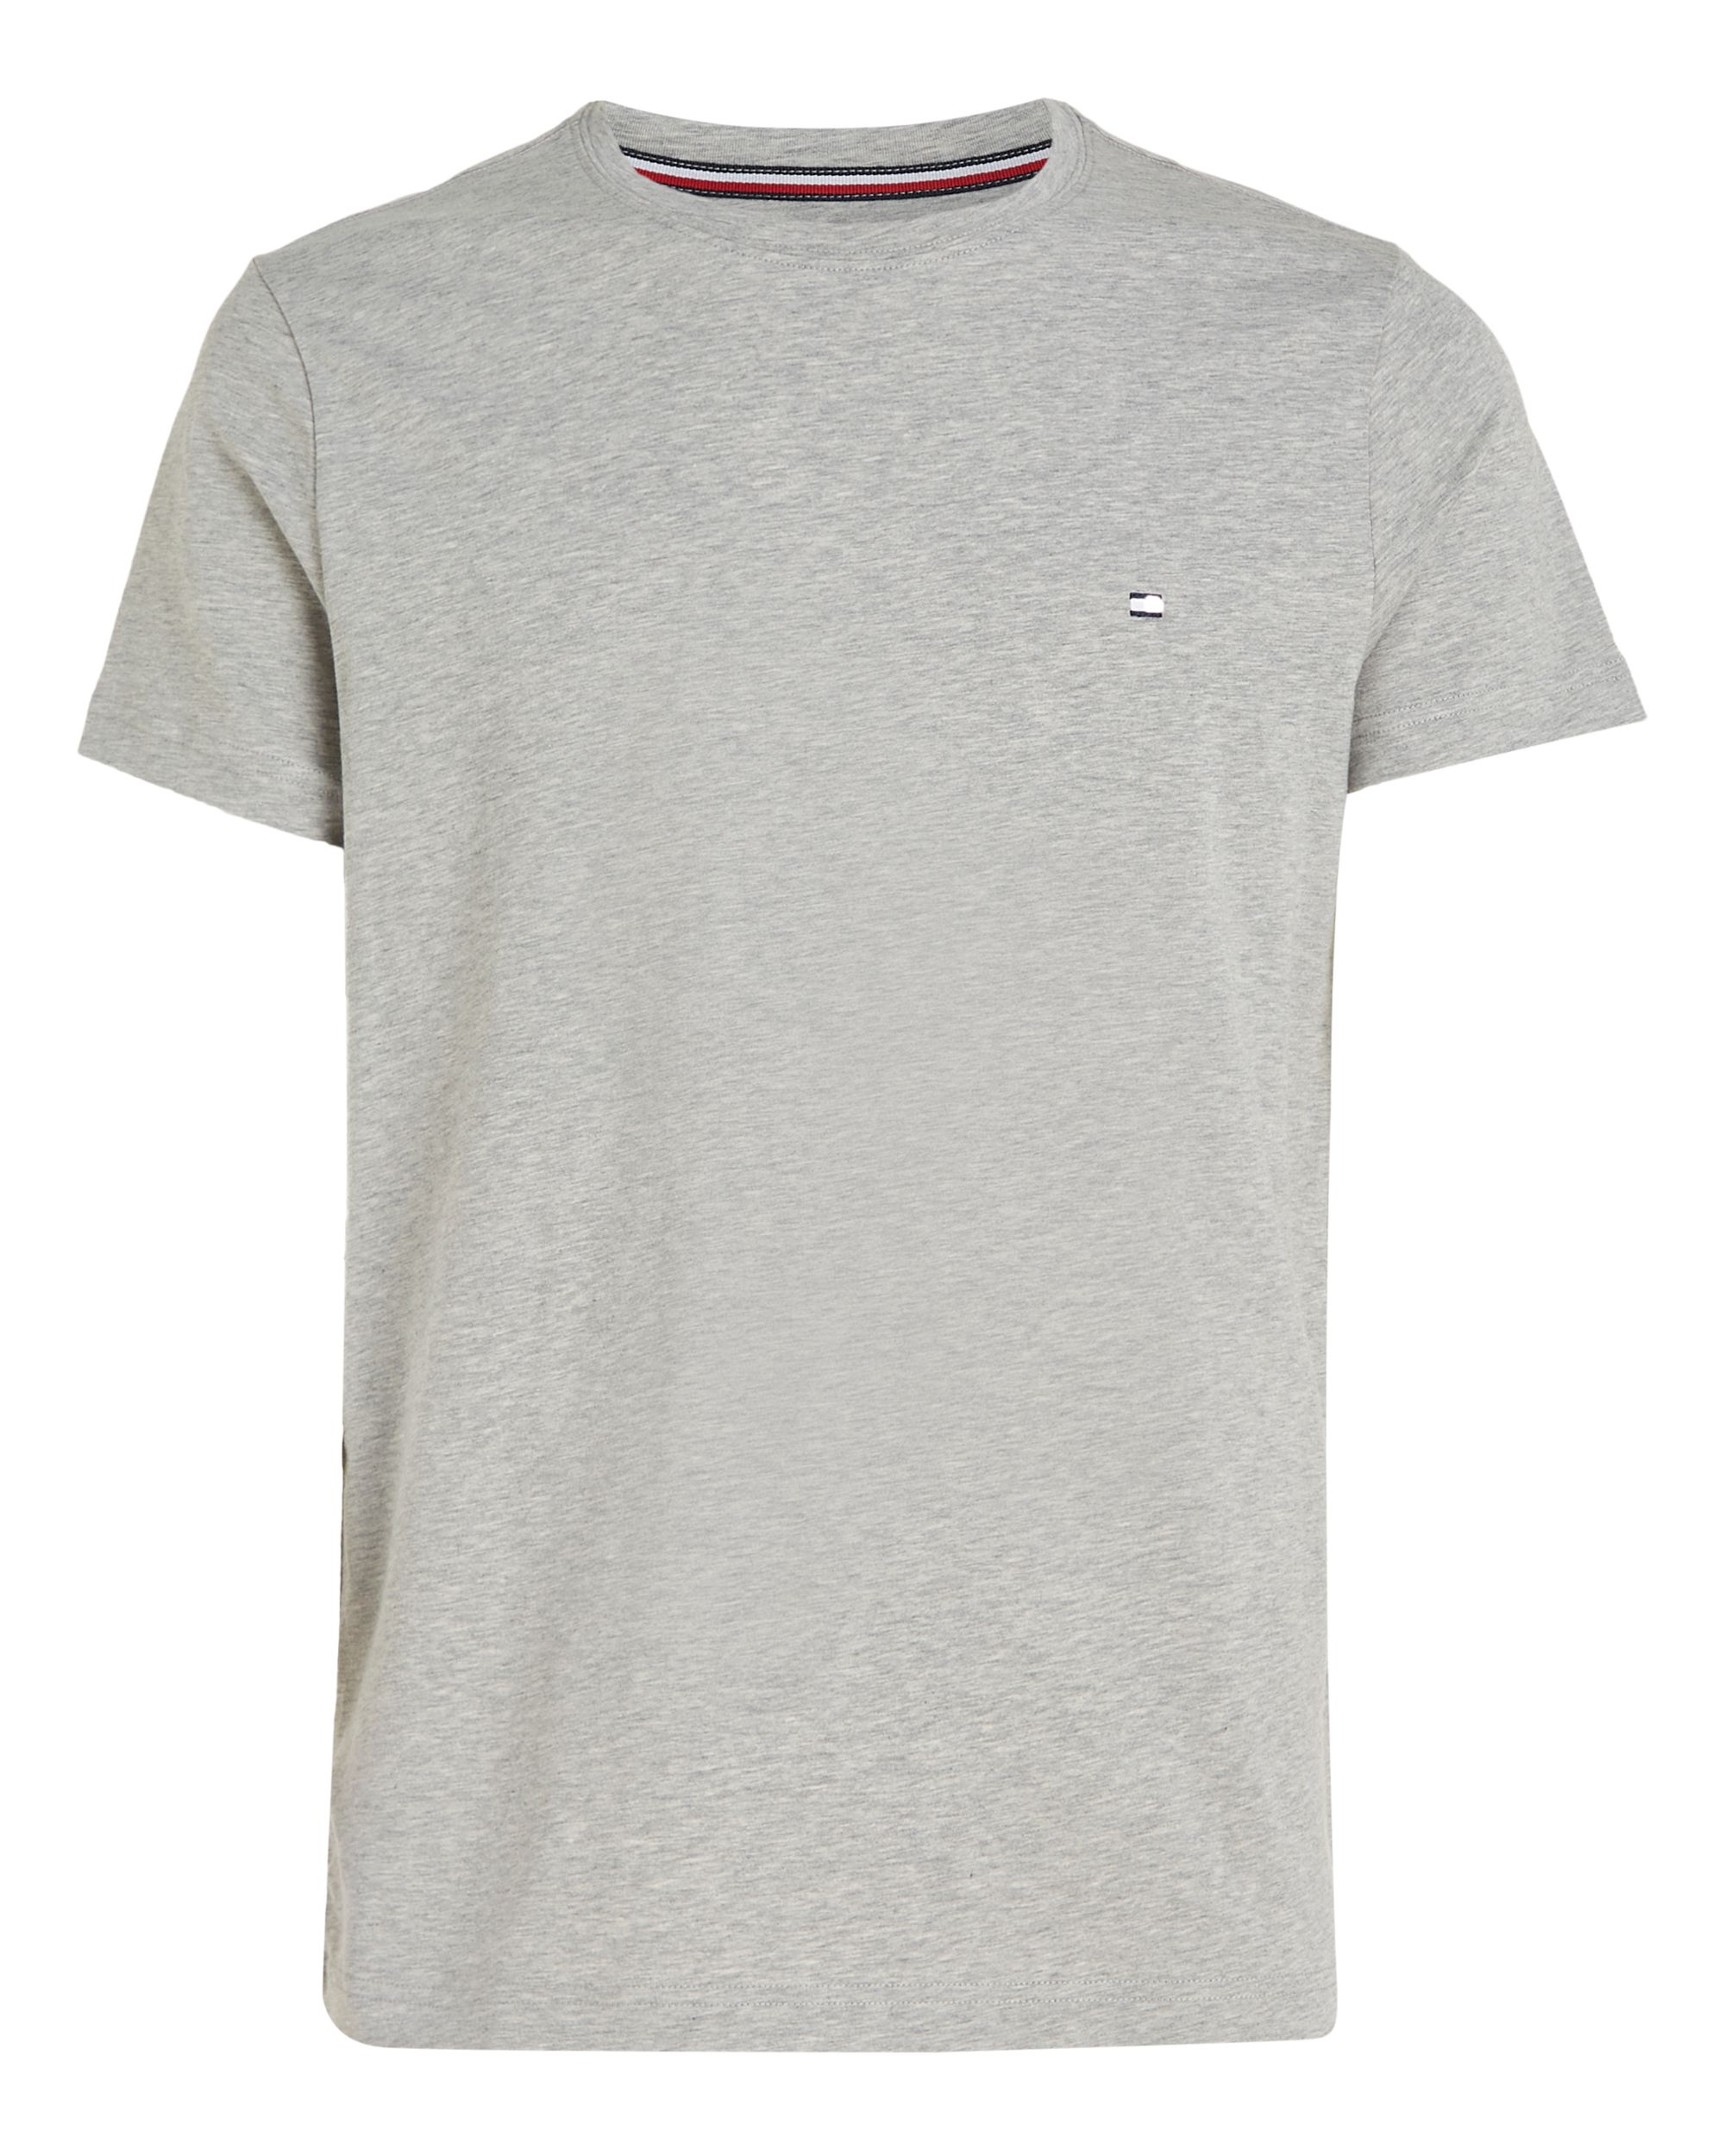 Tommy Hilfiger Menswear T-shirt KM Grijs 086996-001-L